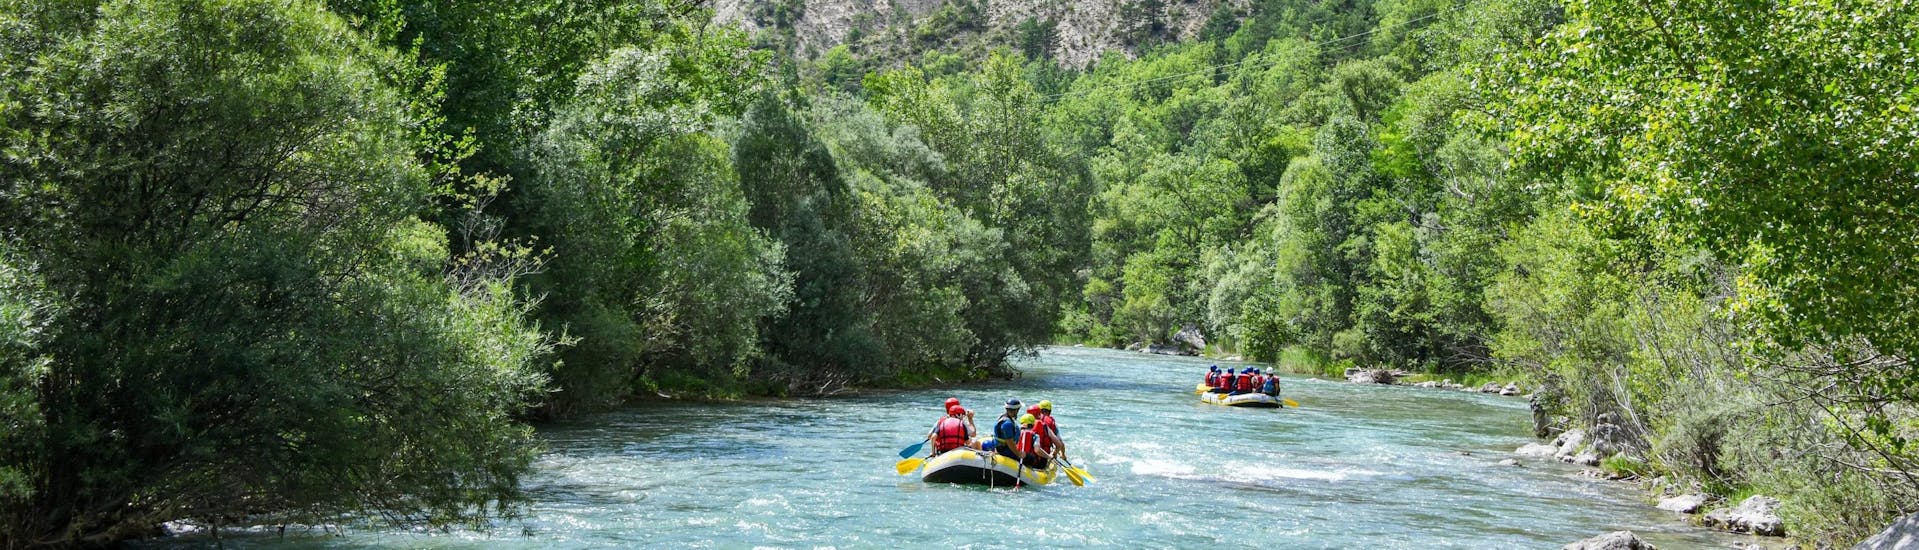 Les eaux émeraudes de la rivière Verdon, célèbre destination pour le rafting et la randonnée en rivière, activités proposées par Feel Rafting à Castellane.